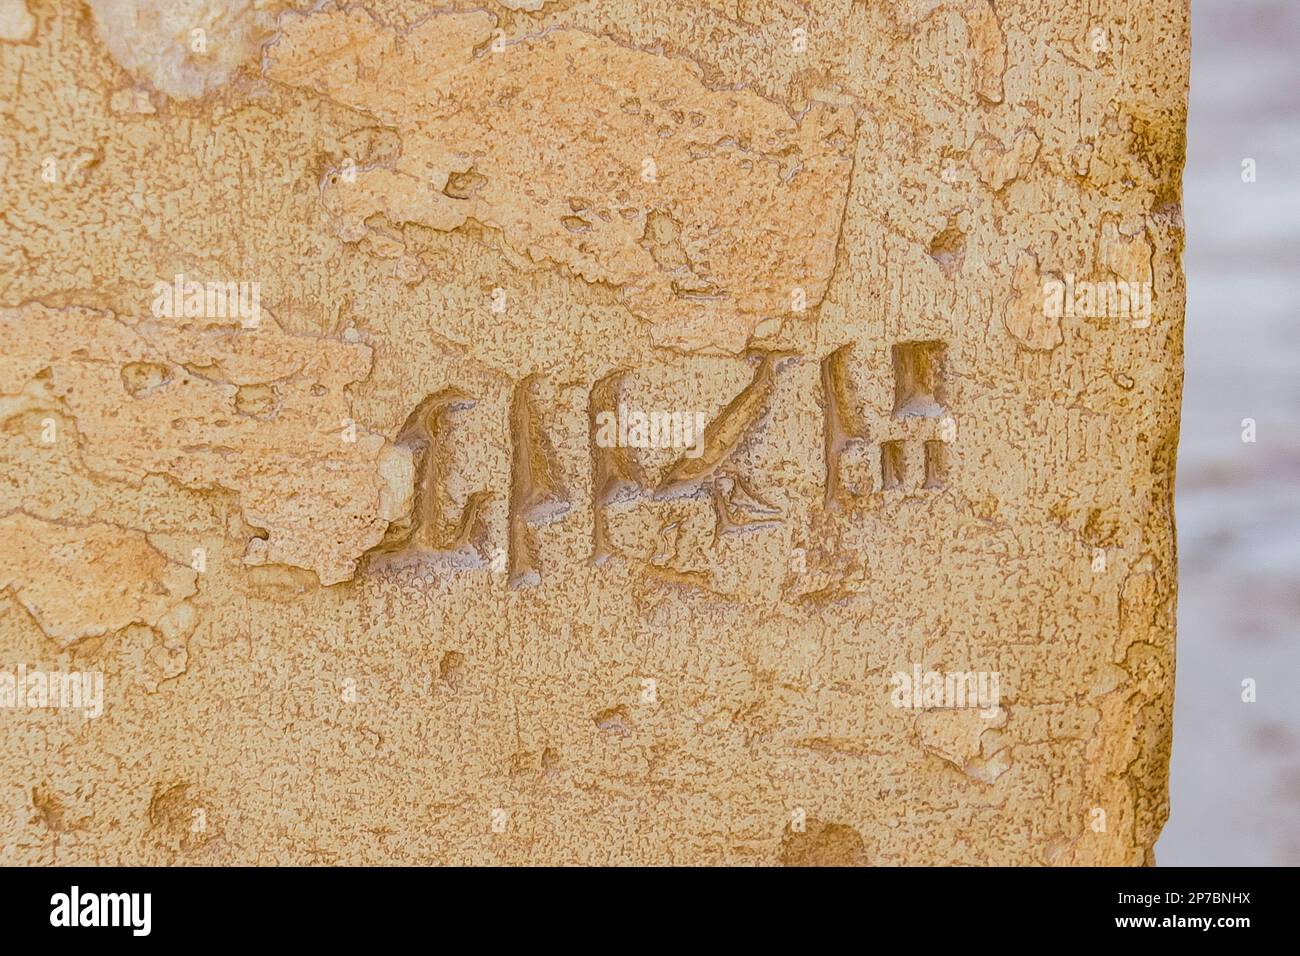 Egypte, Saqqara vicino al Cairo, tomba del nuovo Regno di Horemheb, graffito sul secondo pilone: Penbuy. Foto Stock